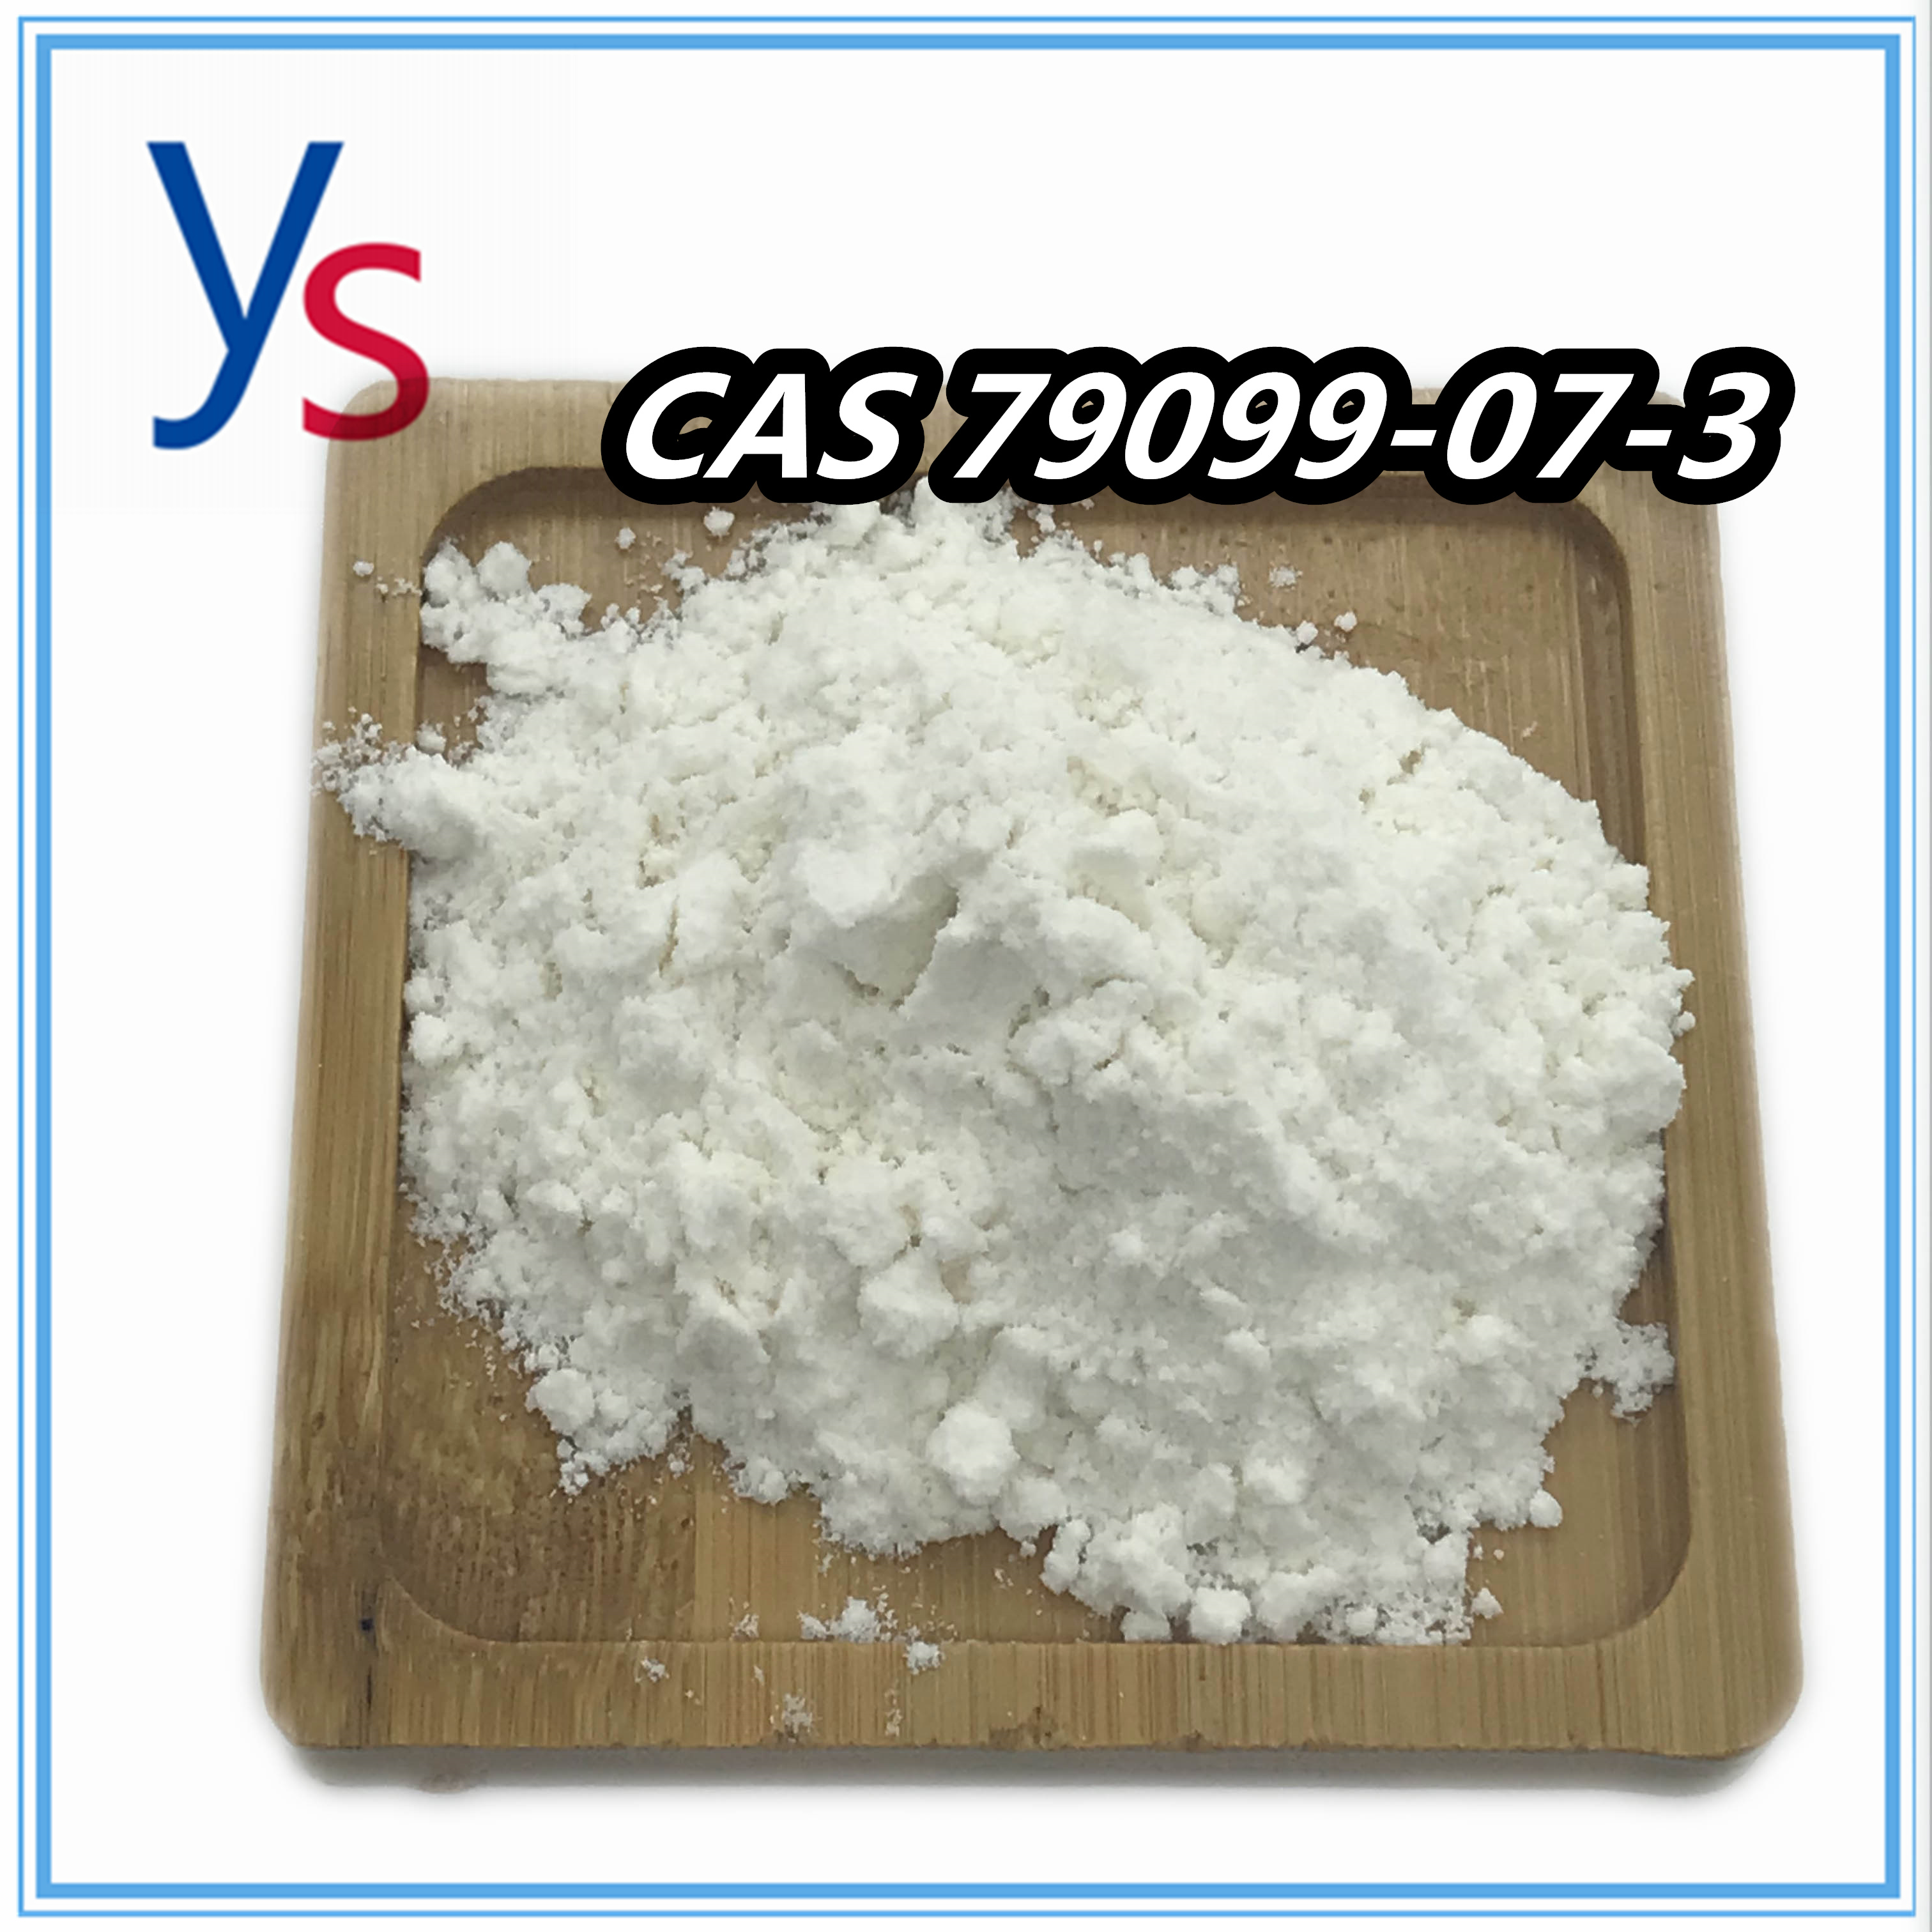 CAS 79099-07-3 Hot Sale farmaceutische tussenproducten 